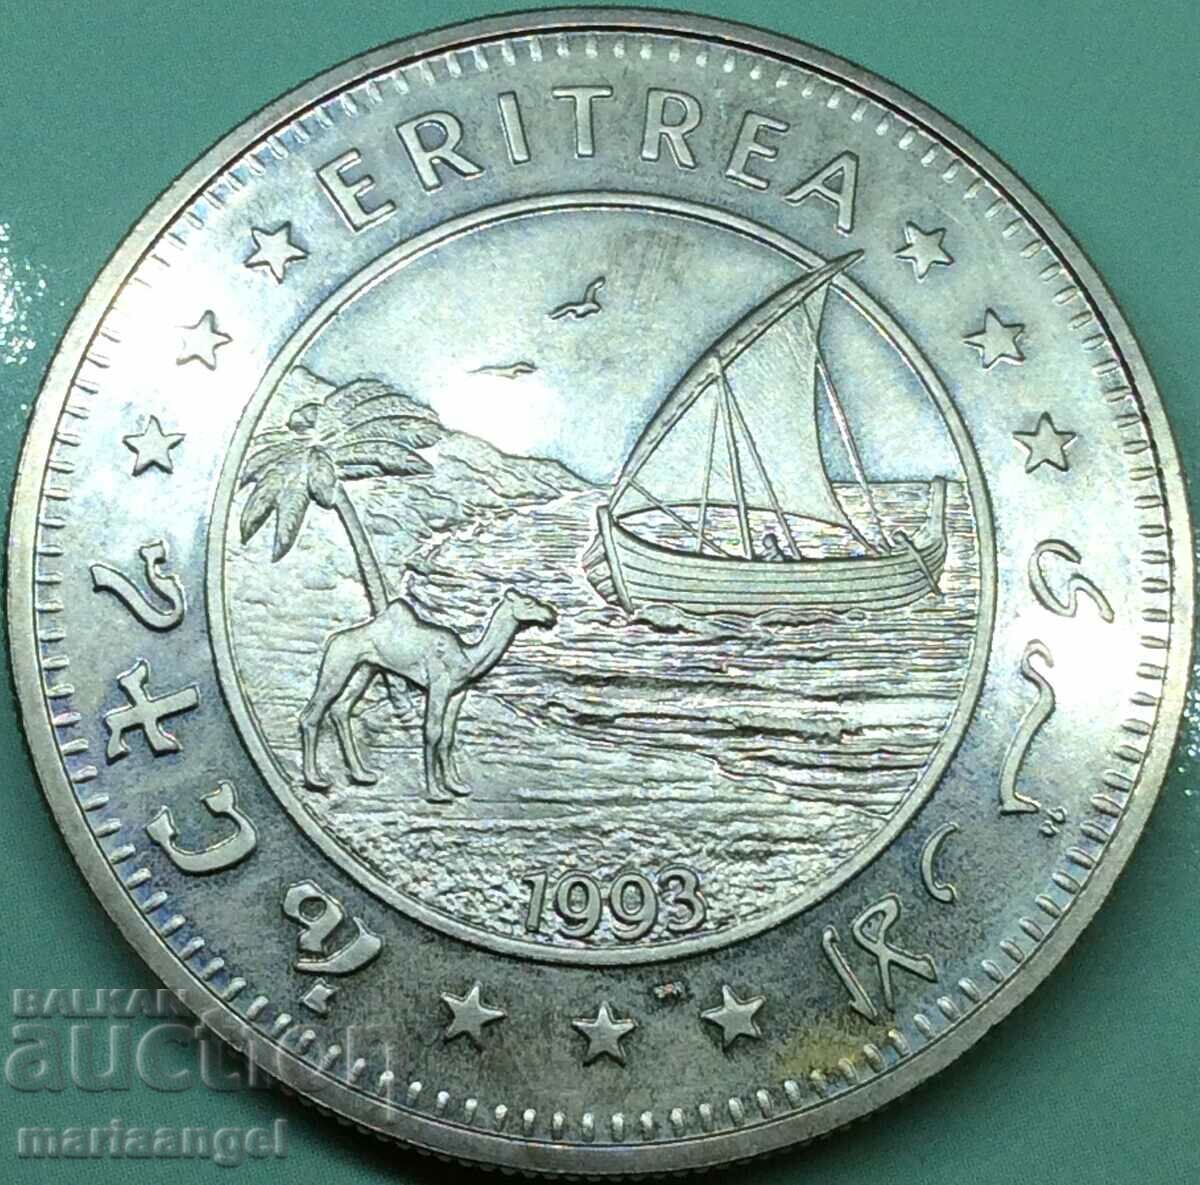 Ερυθραία 1993 1 δολάριο